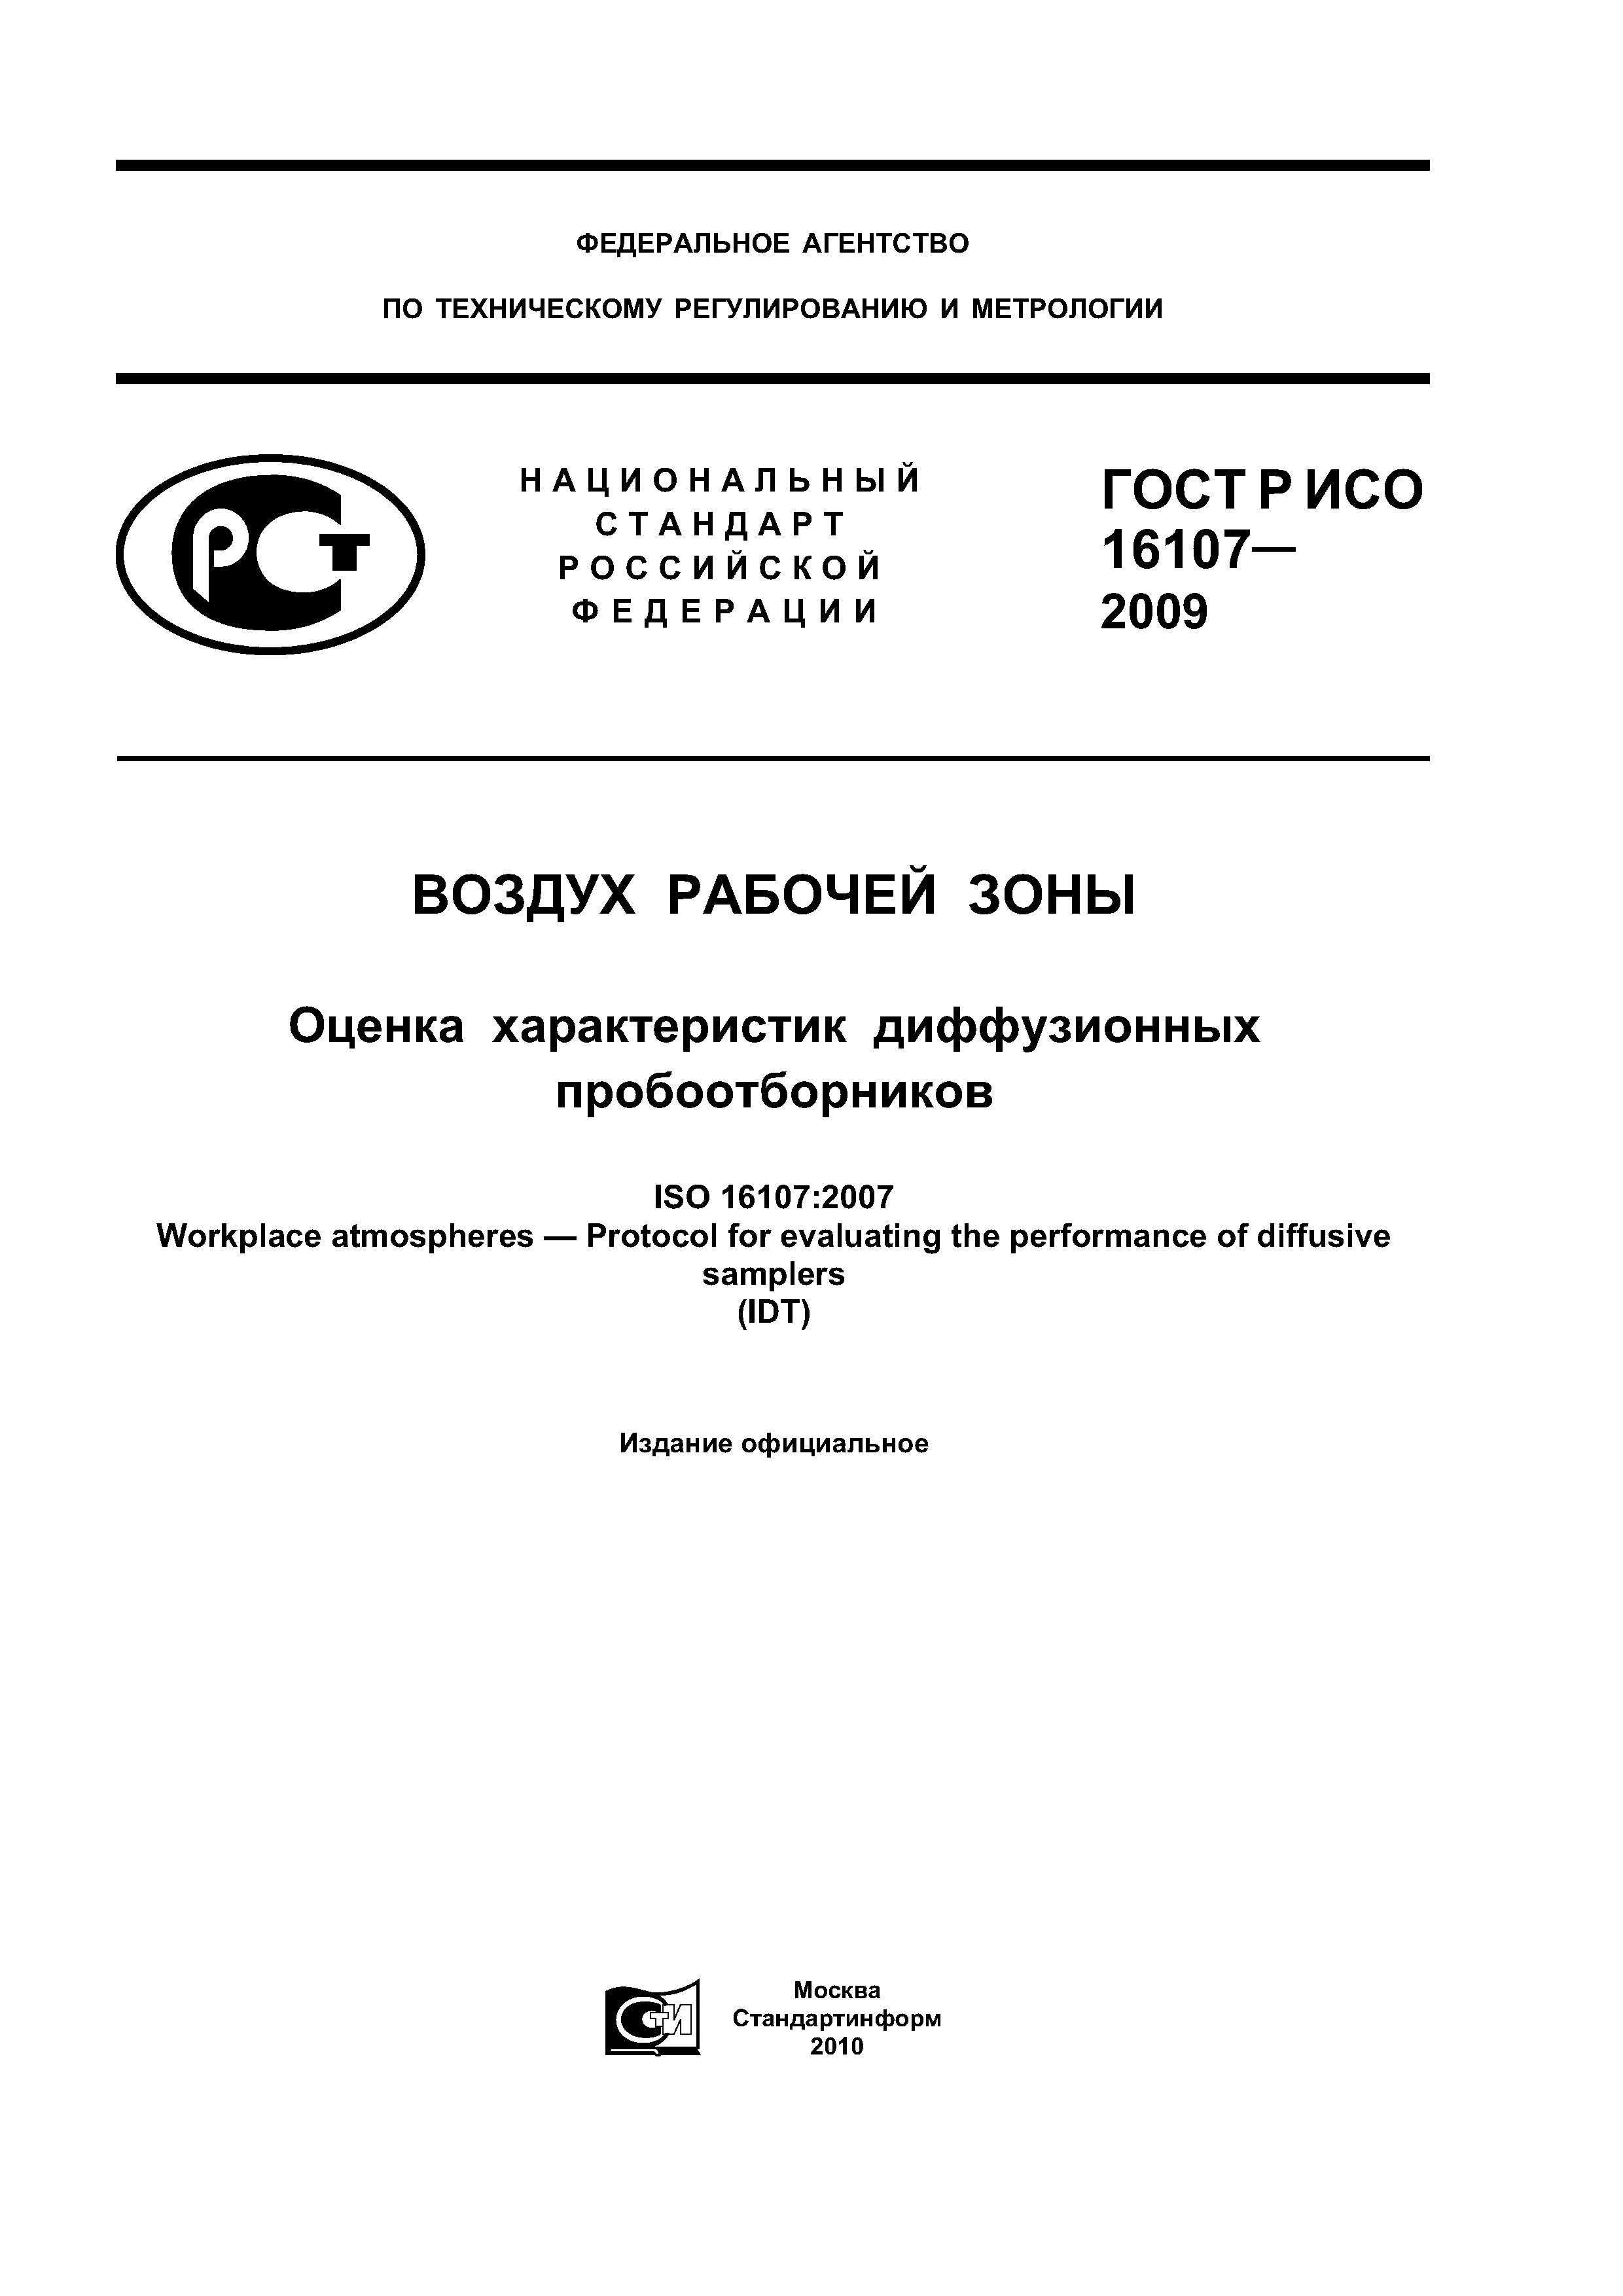 ГОСТ Р ИСО 16107-2009